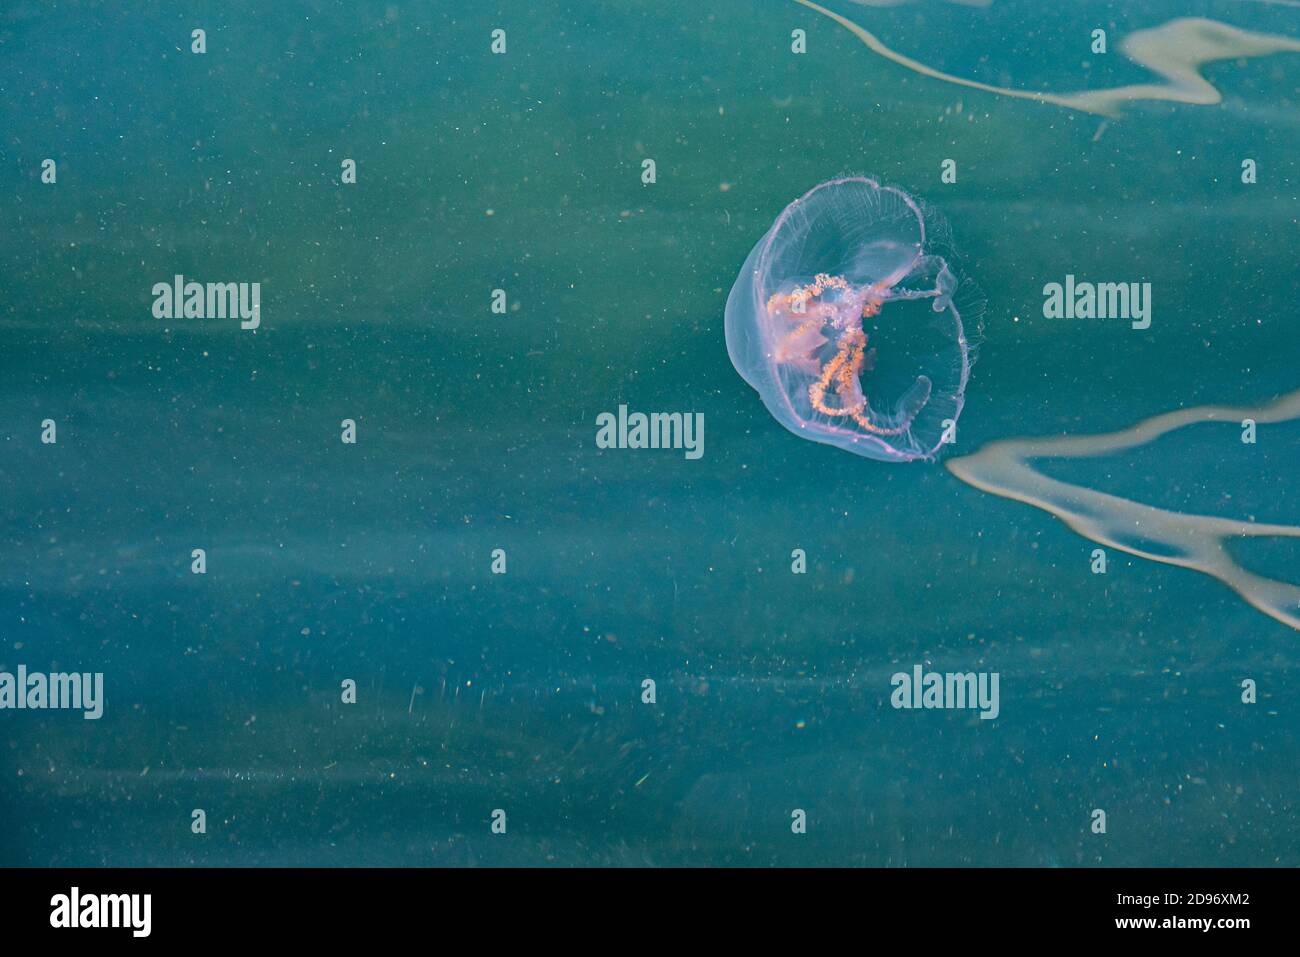 Un méduse de mer errant dans les eaux profondes de l'océan transmet la peur, le danger et le malaise. La gelée de poisson créepy dans la Baltique cause la phobie et l'aversion Banque D'Images